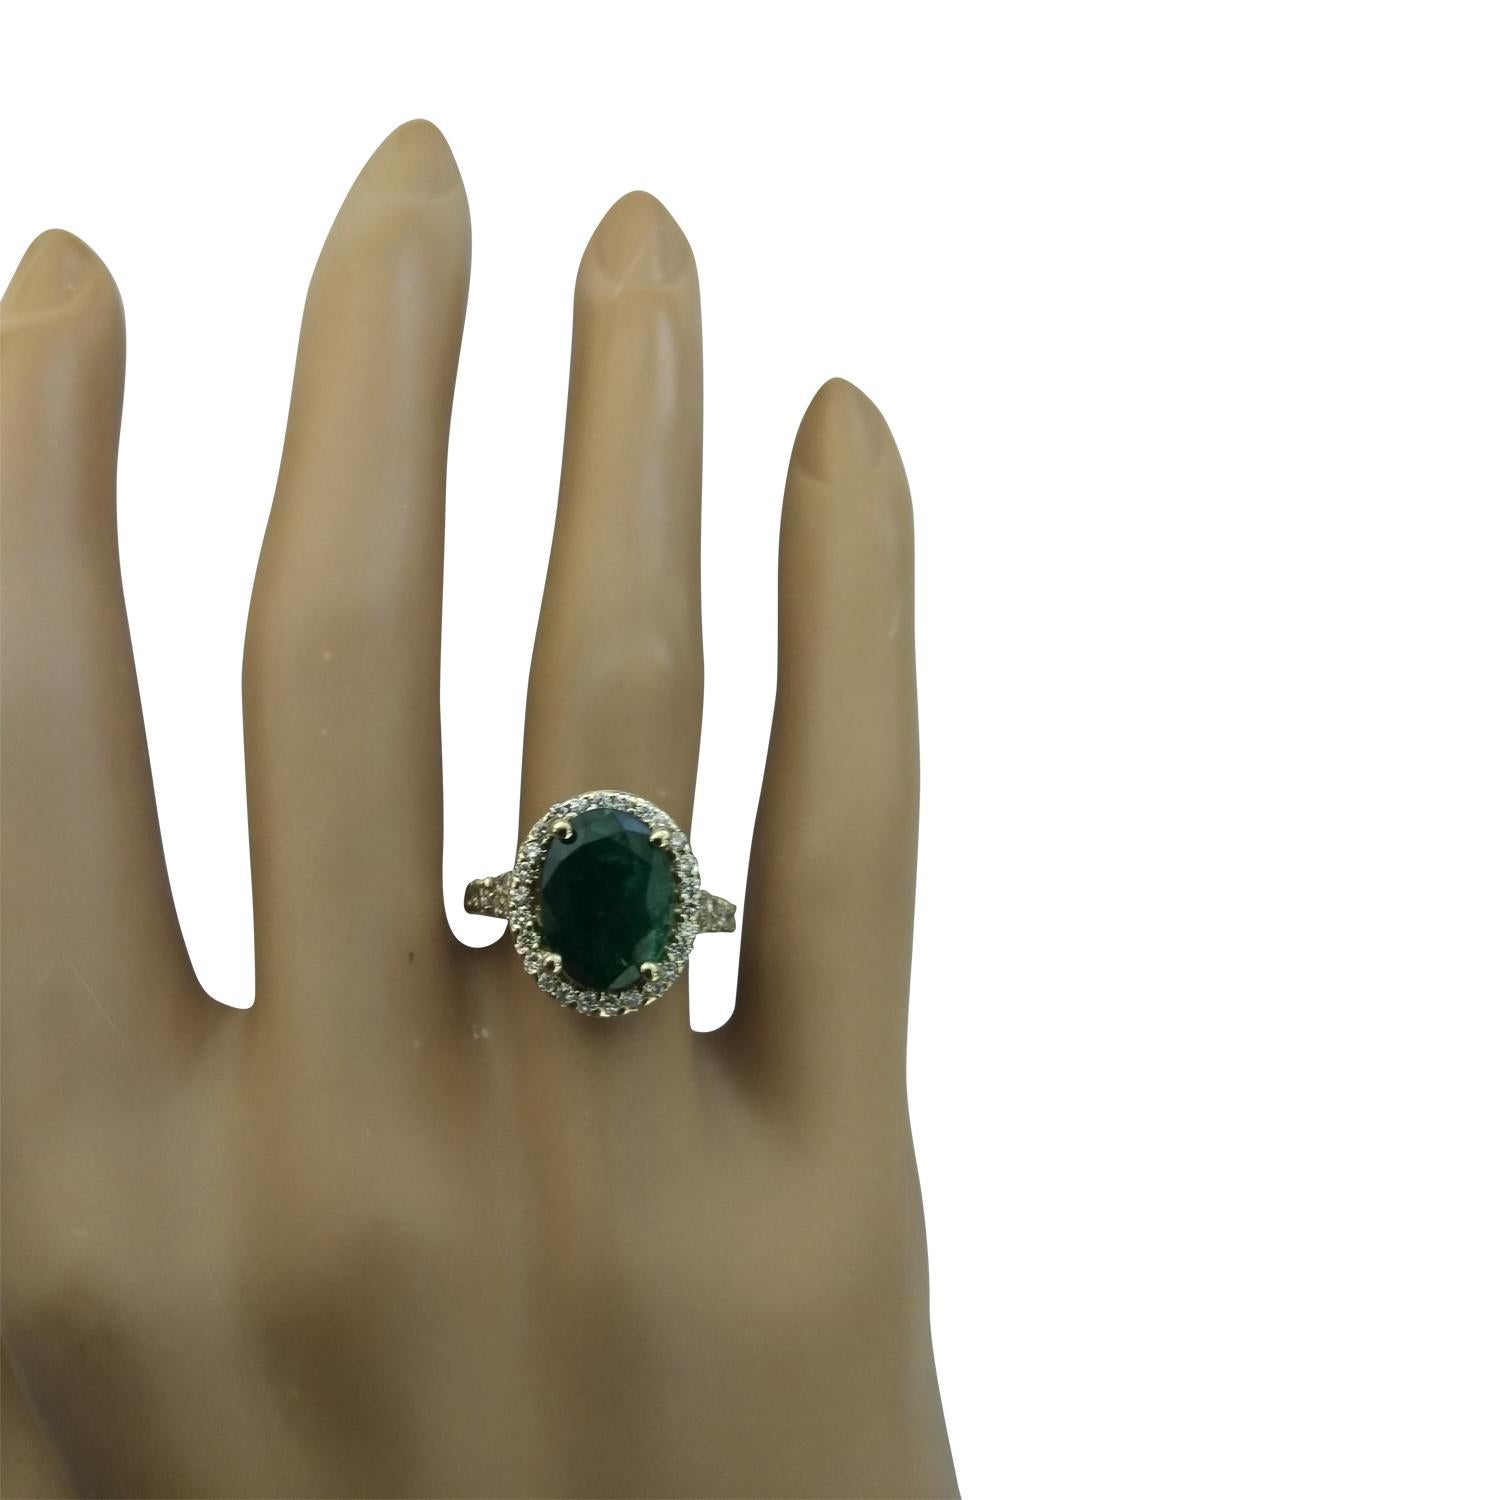 3.70 Carat Natural Emerald 14 Karat Solid Yellow Gold Diamond Ring
Estampillé : 14K 
Poids total de l'anneau : 5,4 grammes
Poids de l'émeraude 3.10 Carat (11.00x9.00 Millimètres)
Poids du diamant : 0,60 carat (couleur F-G, pureté VS2-SI1)
Mesures de